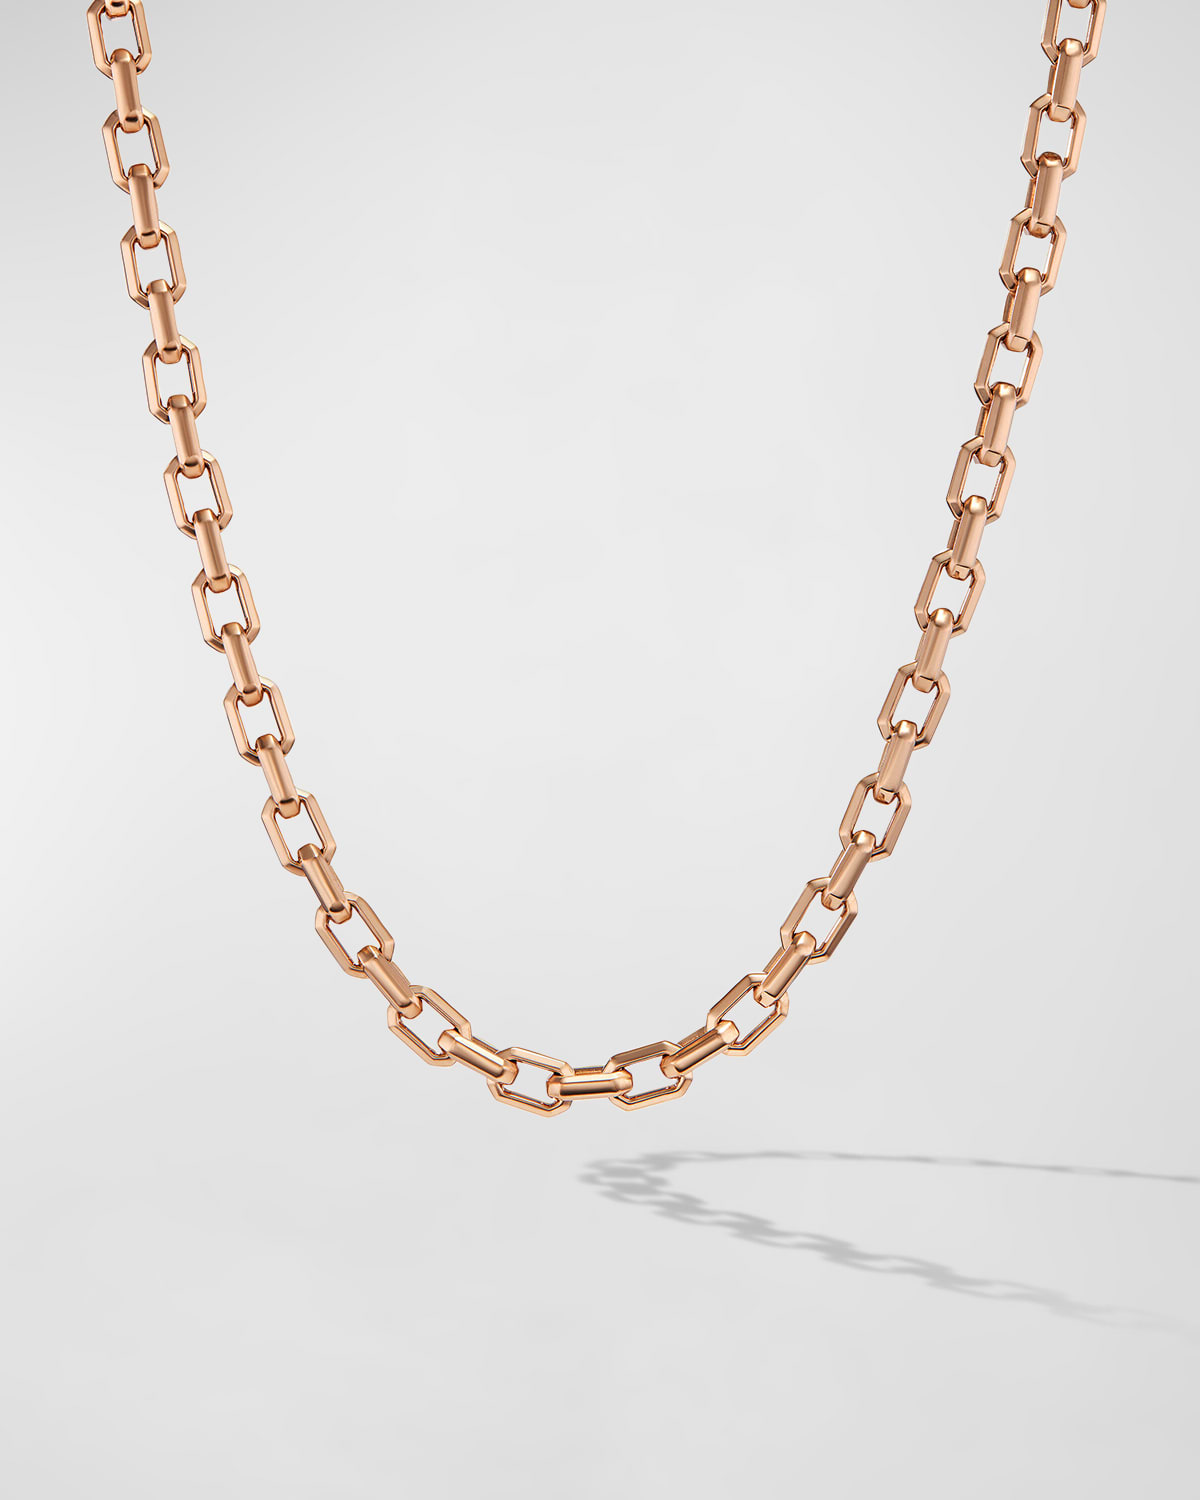 David Yurman Men's Streamline Heirloom Link Necklace in 18K Rose Gold, 5.5mm, 20"L